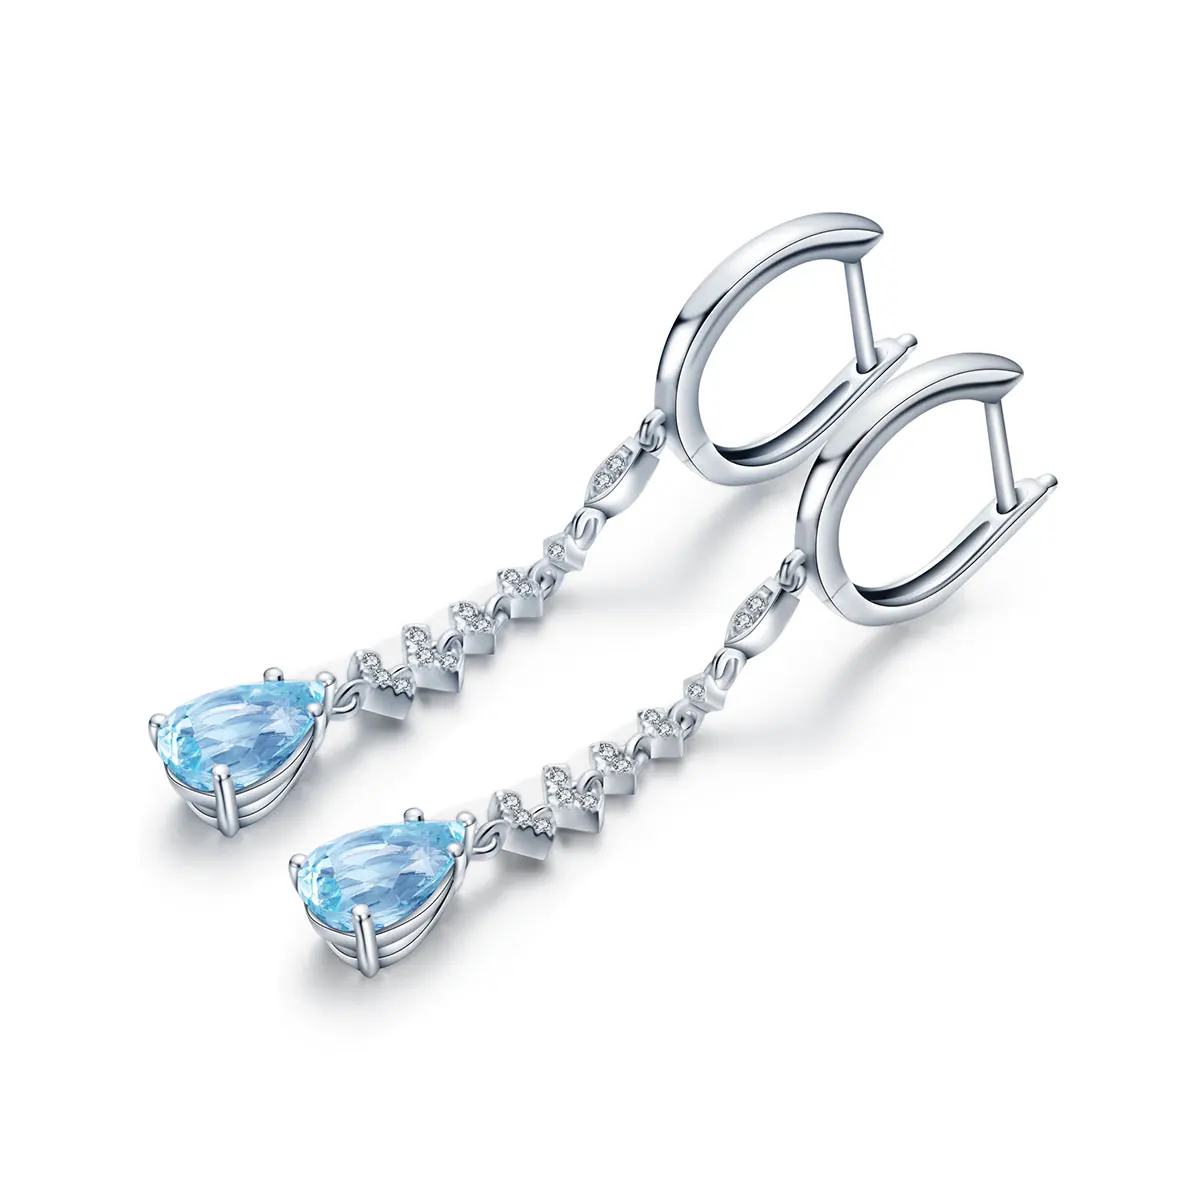 

Anster jewelry S925 sterling silver 3.07ct drop earrings lab grown aquamarine stones hoop earrings, Blue